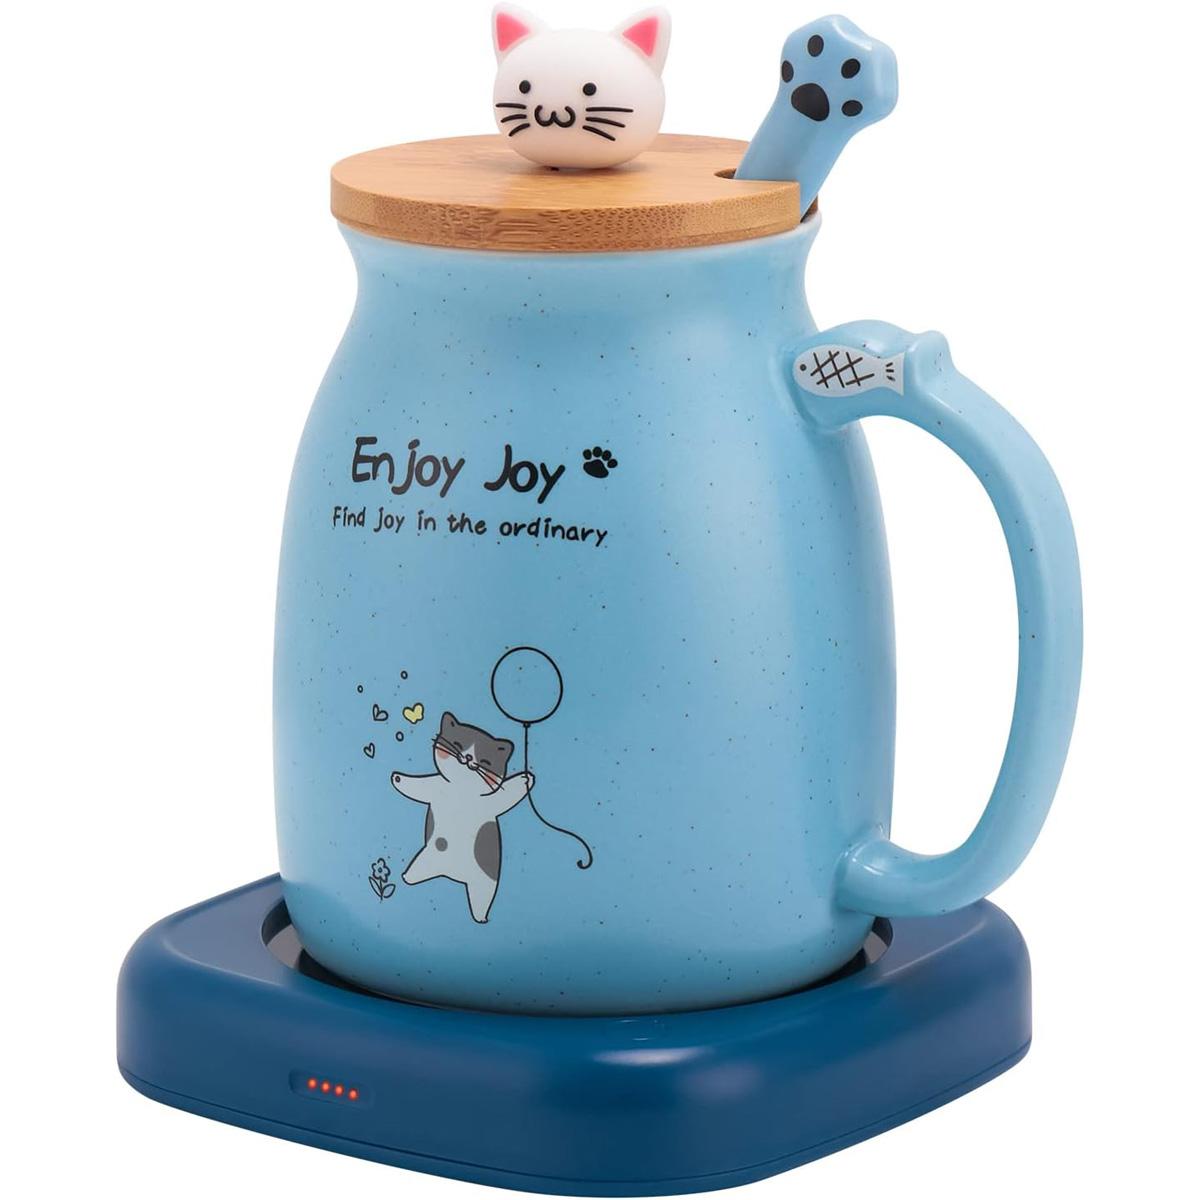 Bsigo Smart Coffee Mug Warmer Cat Mug Set for $15.99 Shipped